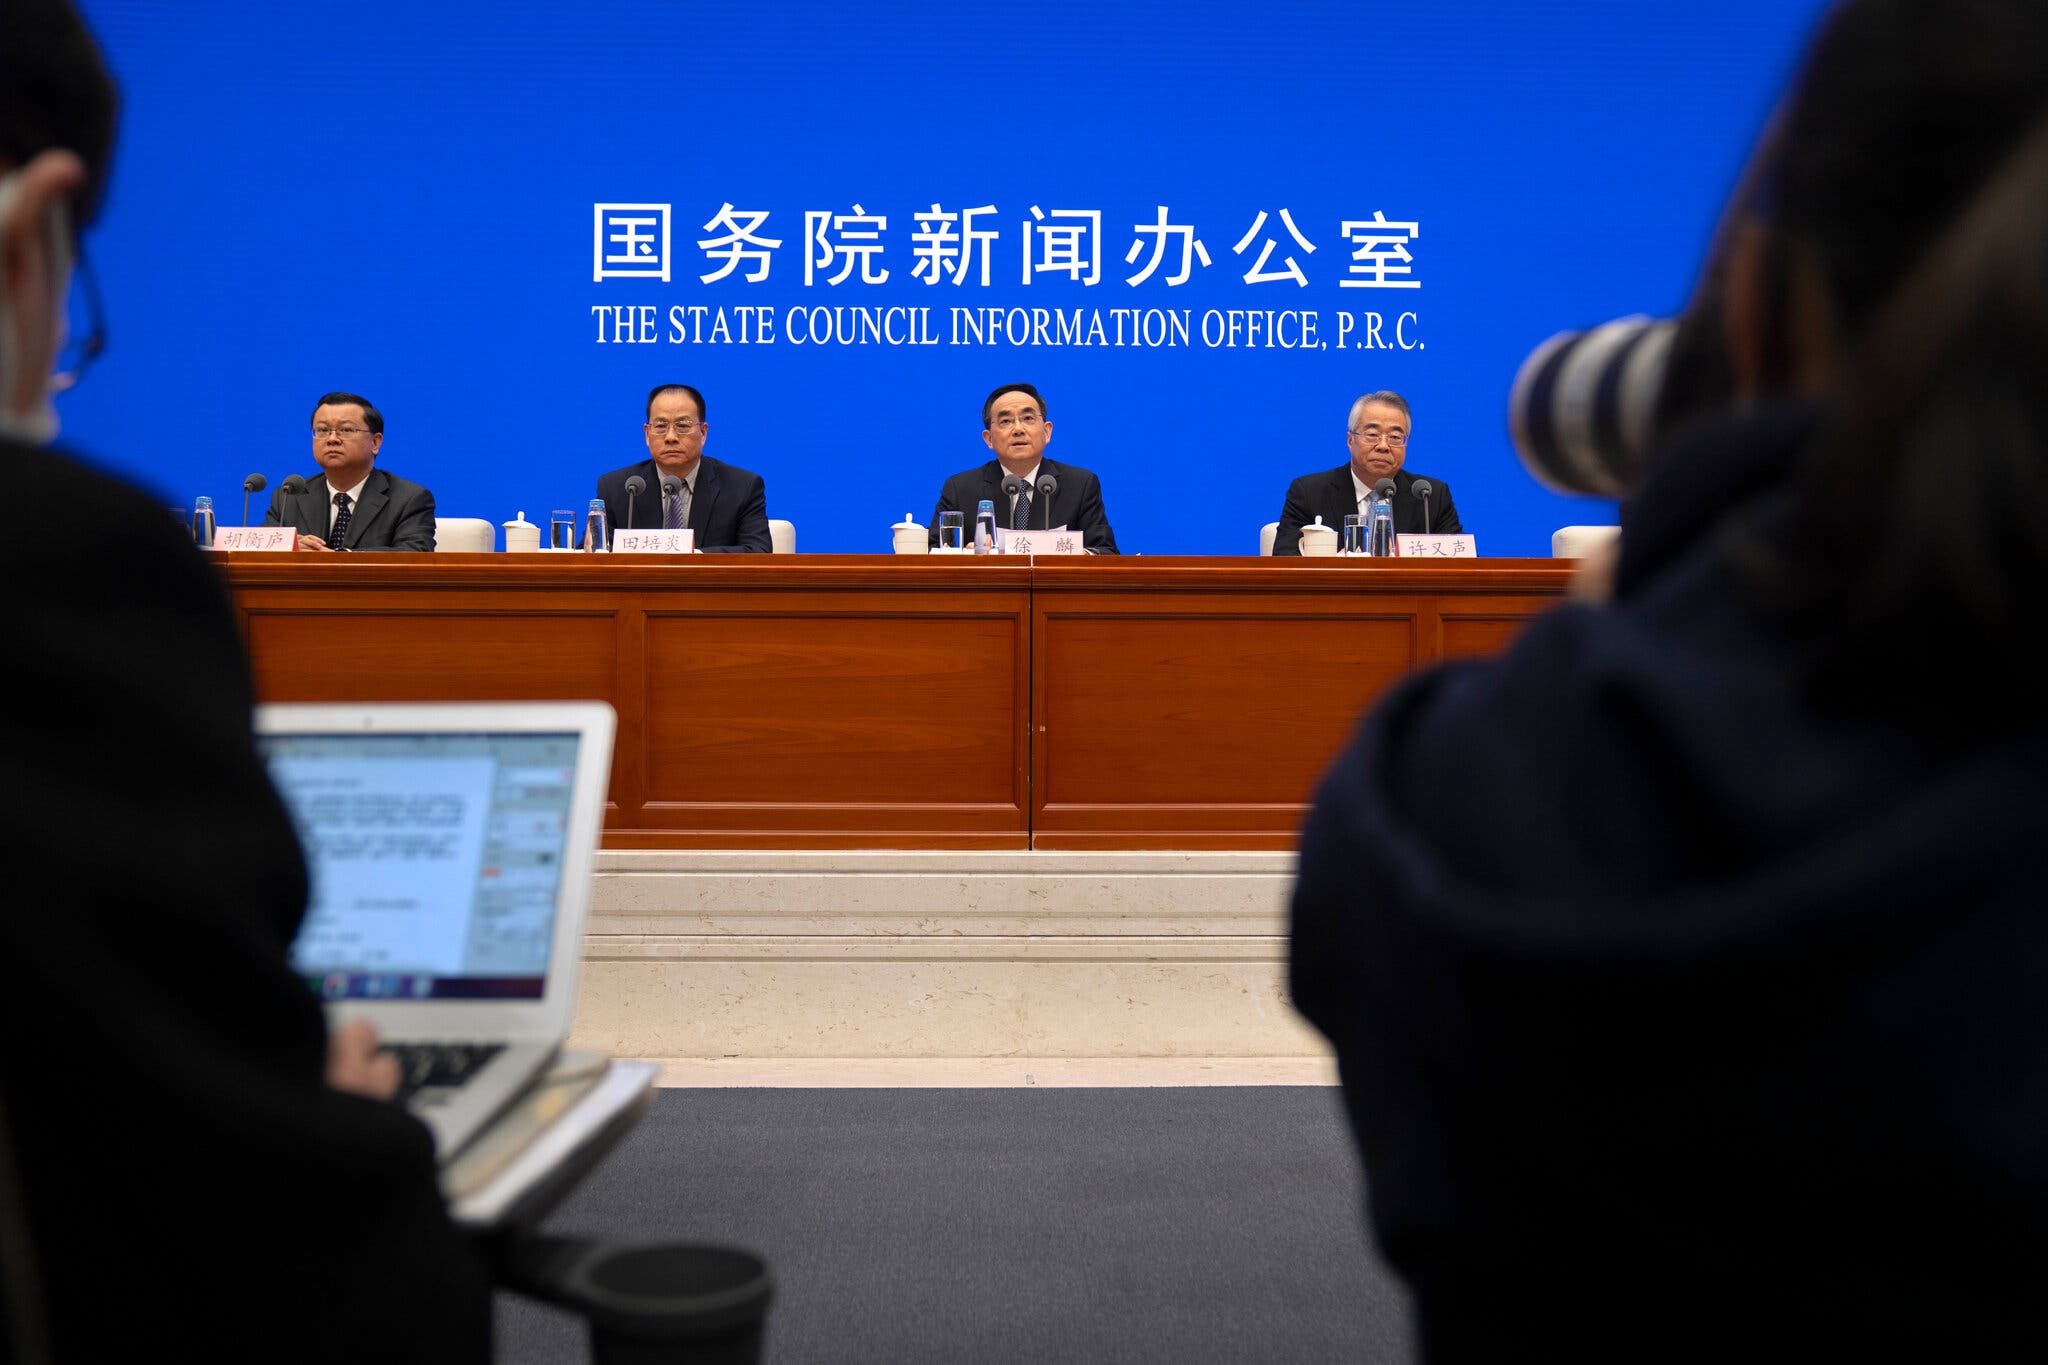 Pak para Samitit për Demokraci, Kina një-partiake thotë: “Edhe ne jemi Demokraci”